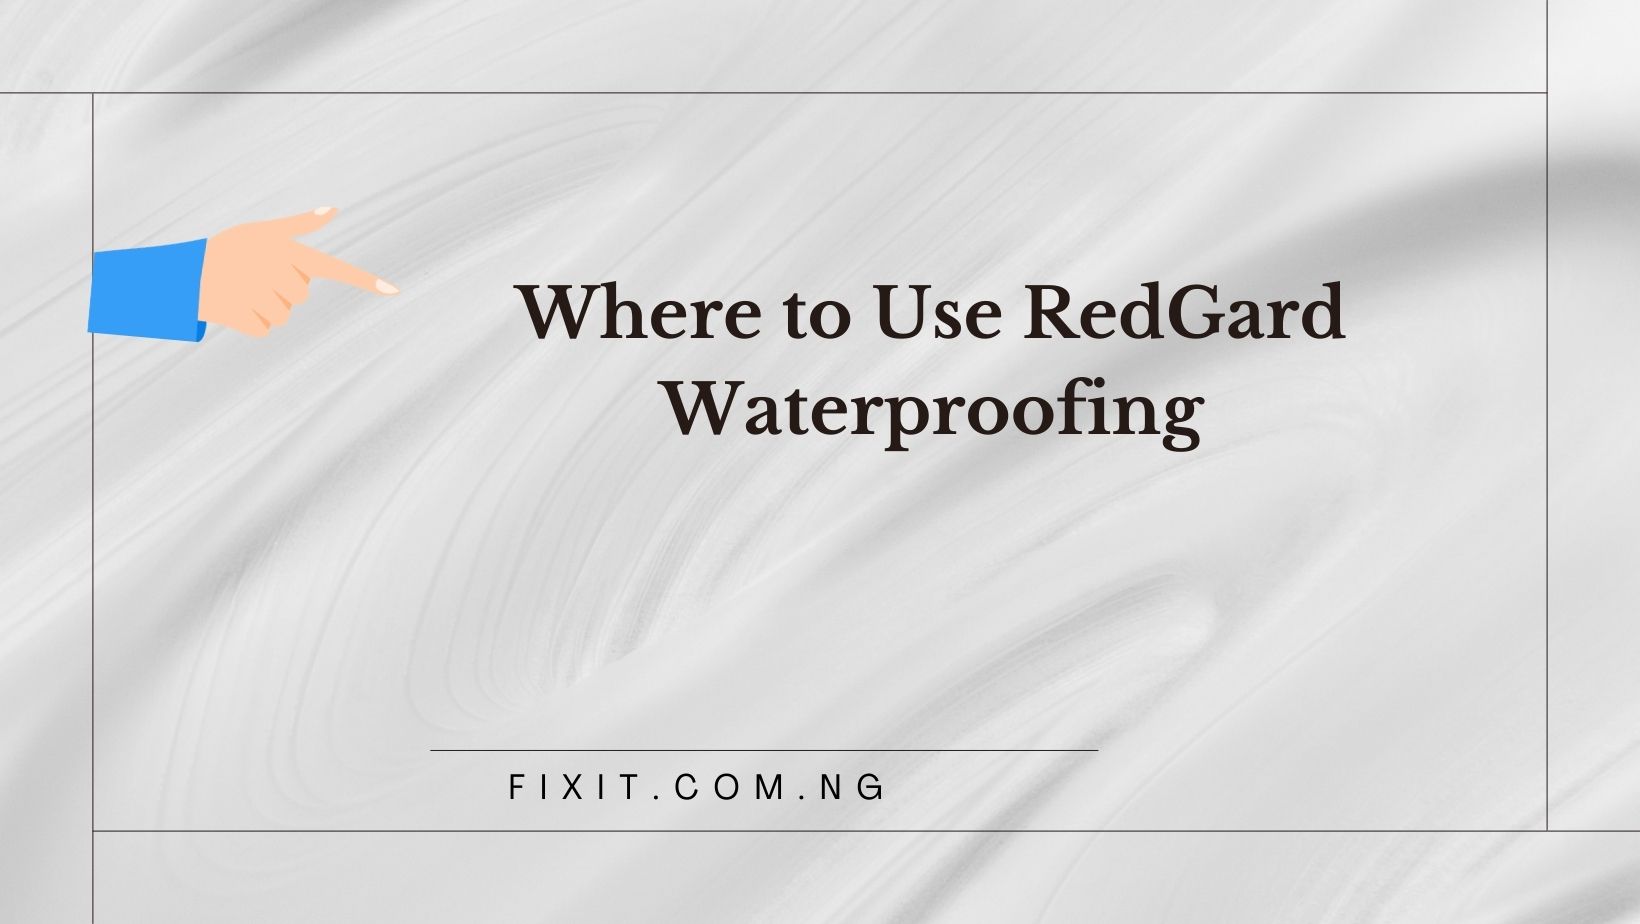 redgard waterproofing